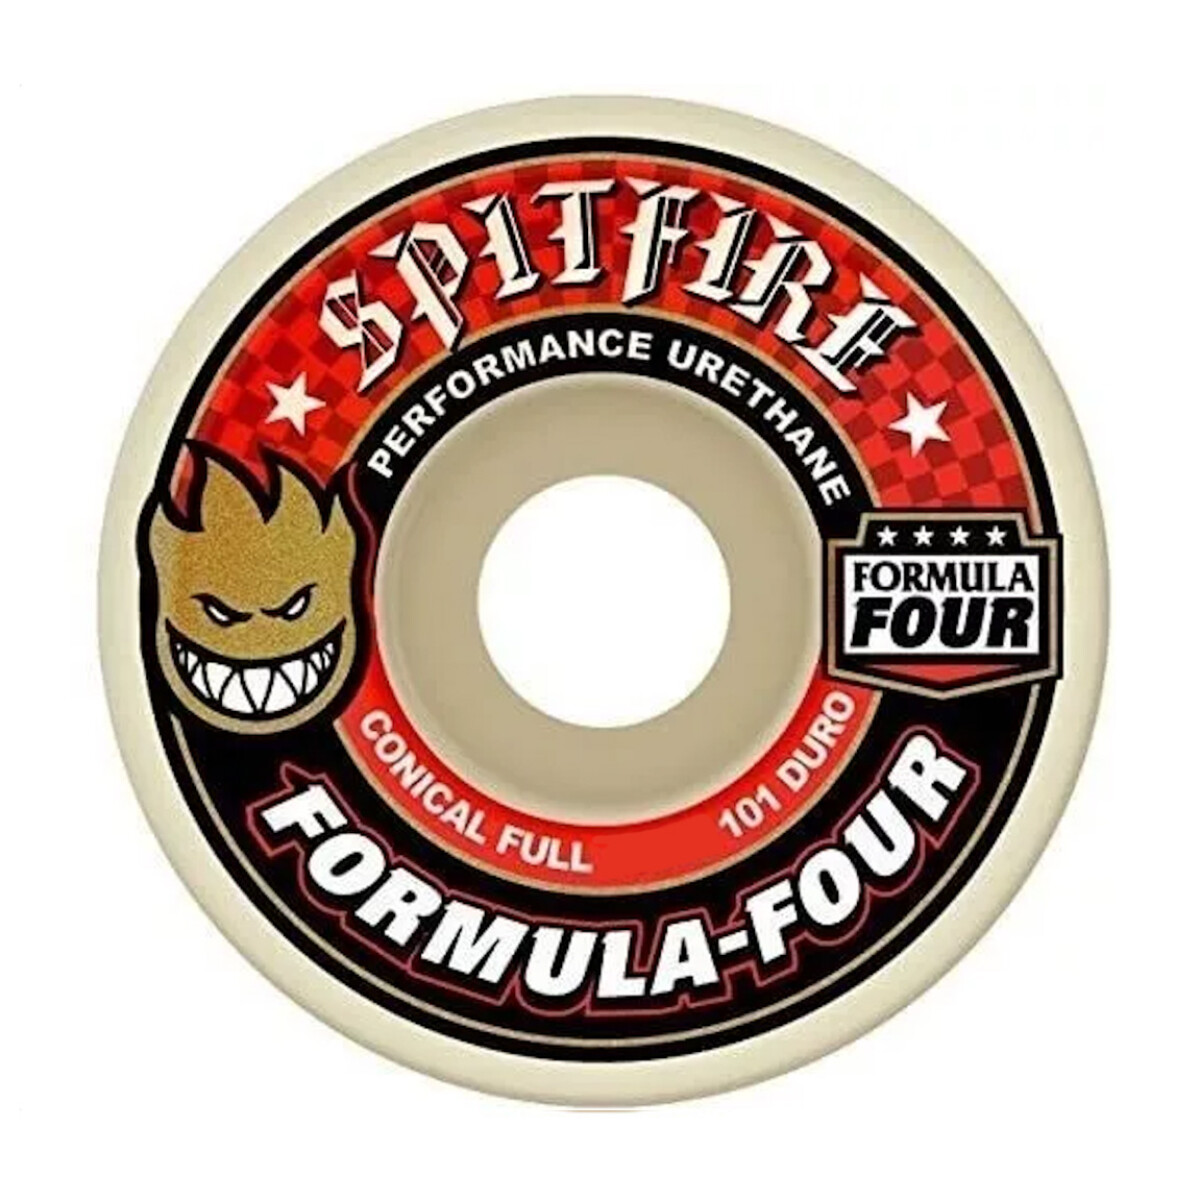 Ruedas de Skate Spitfire Formula Four Conical Full (Red) 54mm 101A 